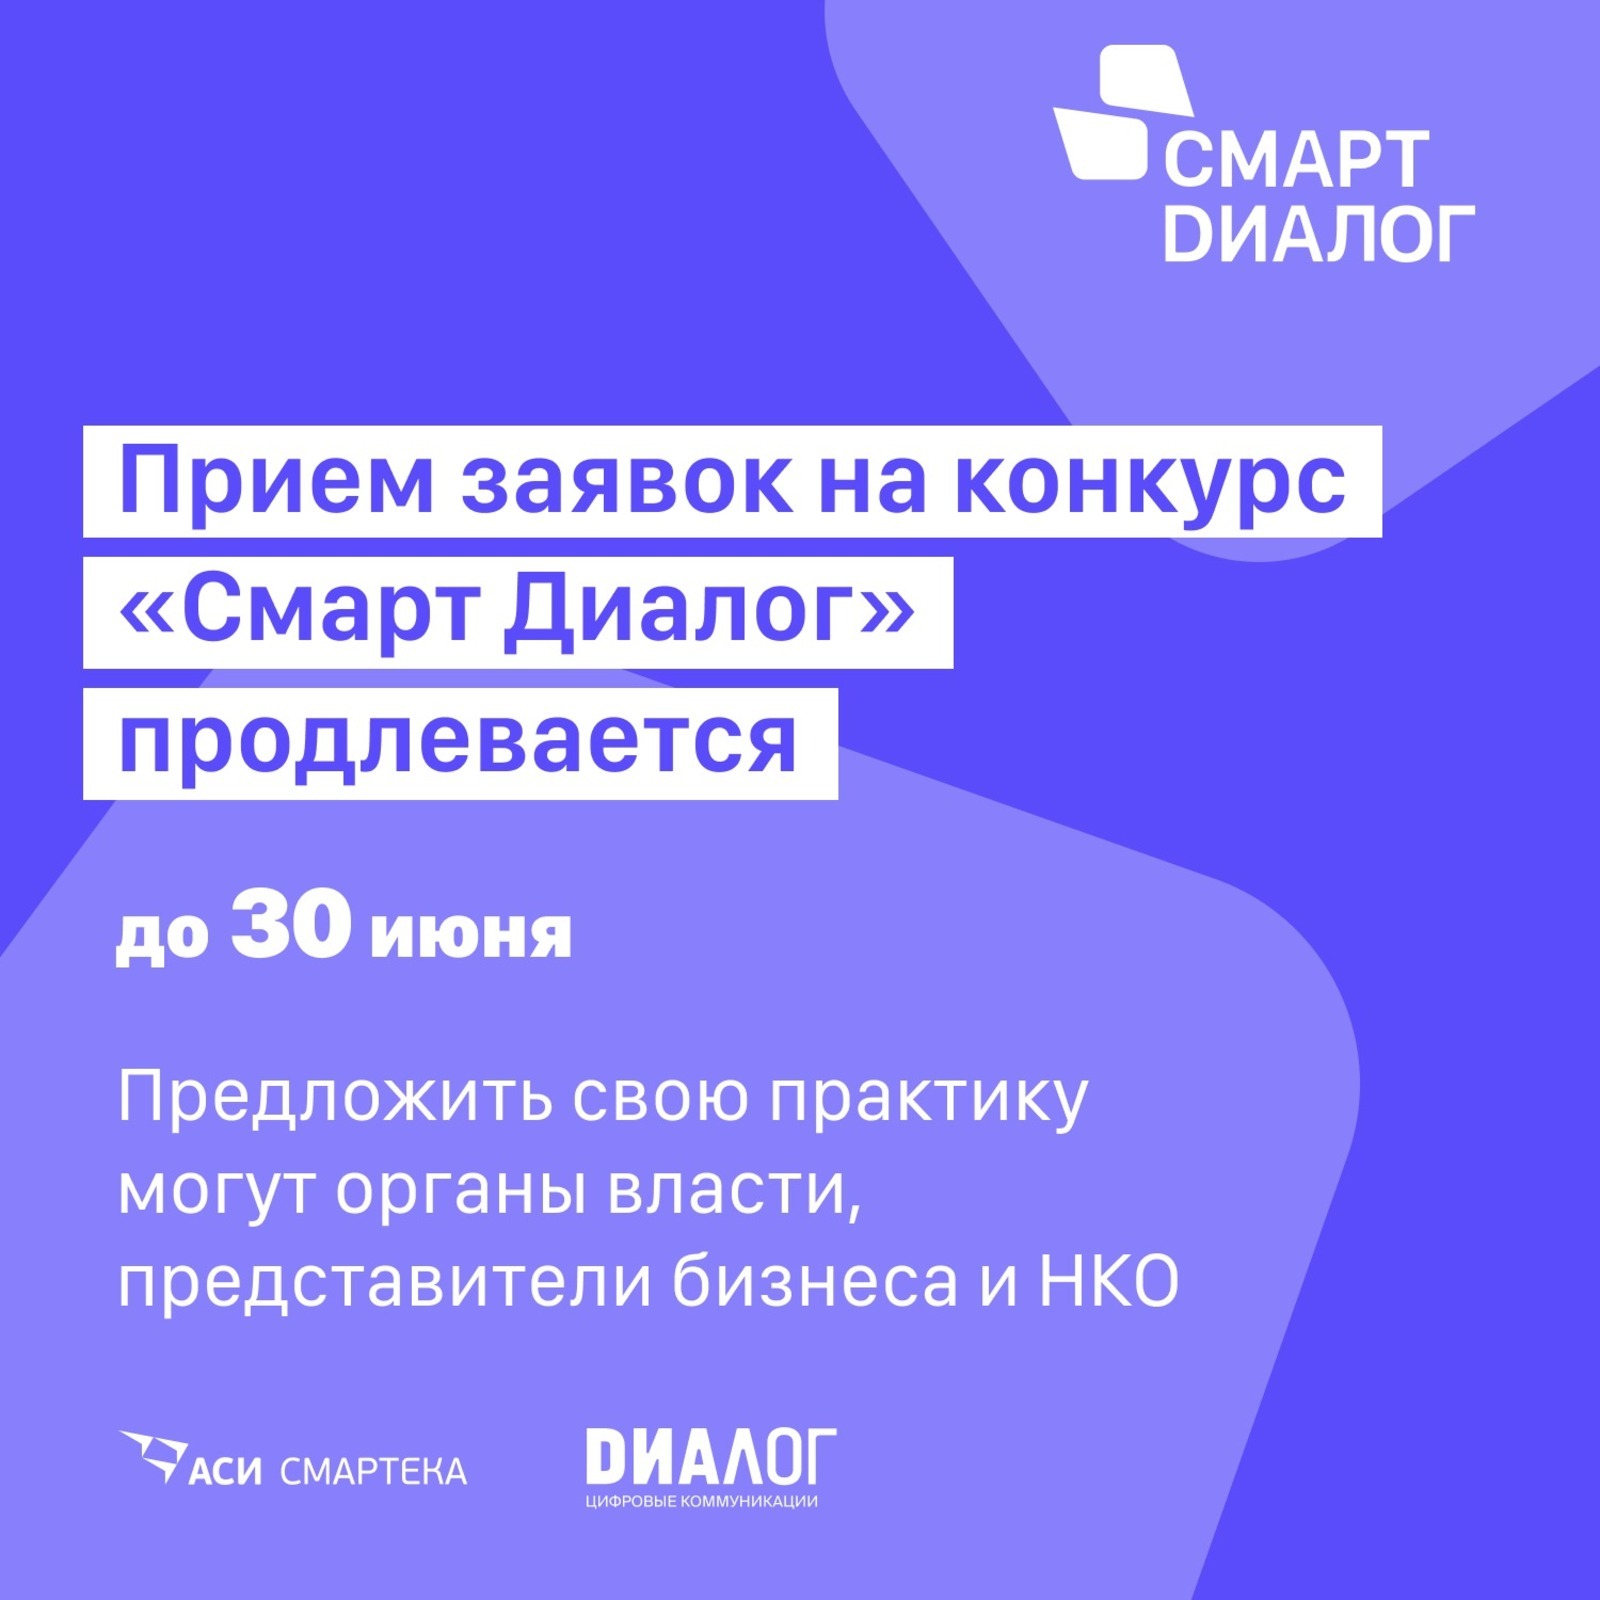 Заявки от Башкортостана ждут на конкурс лучших управленческих практик «Смарт Диалог» до 30 июня